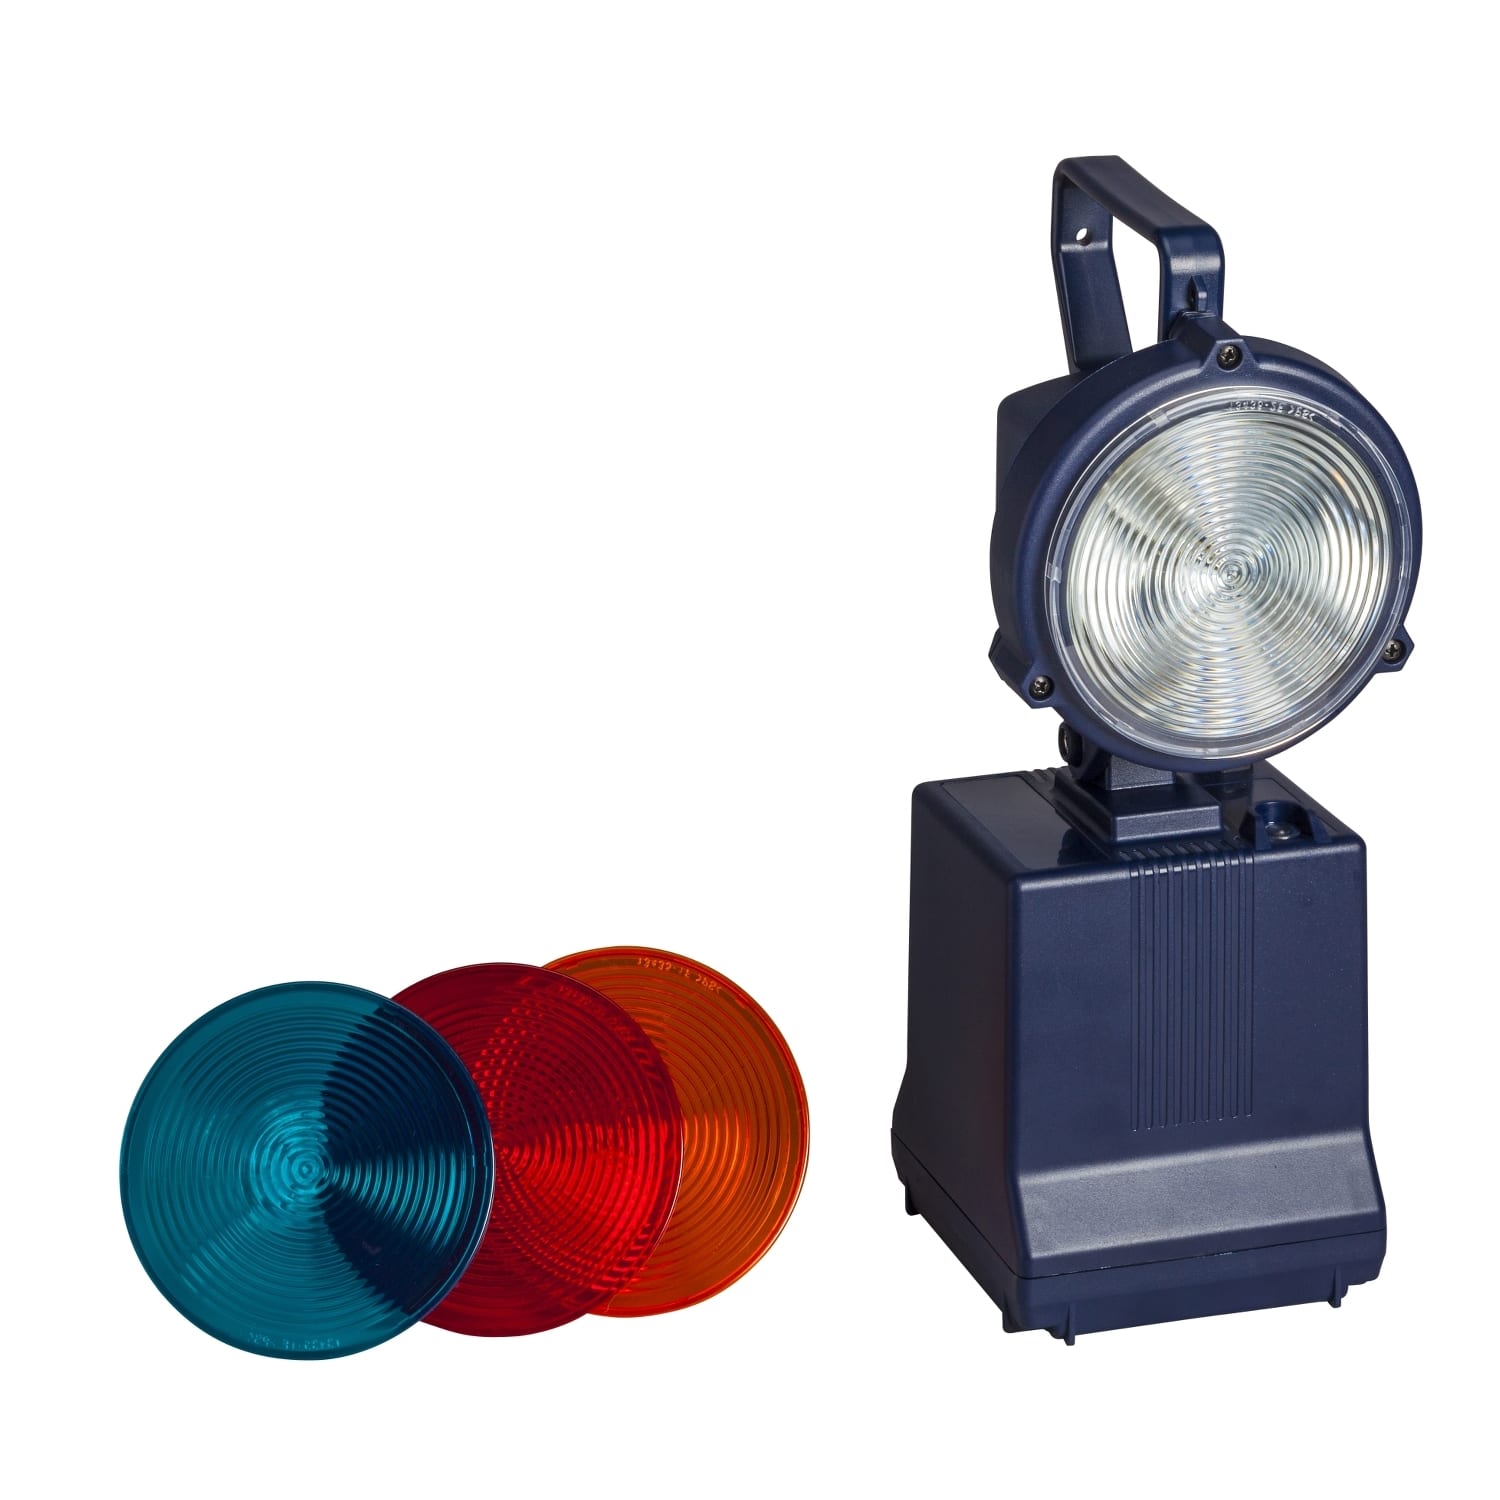 Exiway - Lampe portable pro avec fonction eclairage de securite